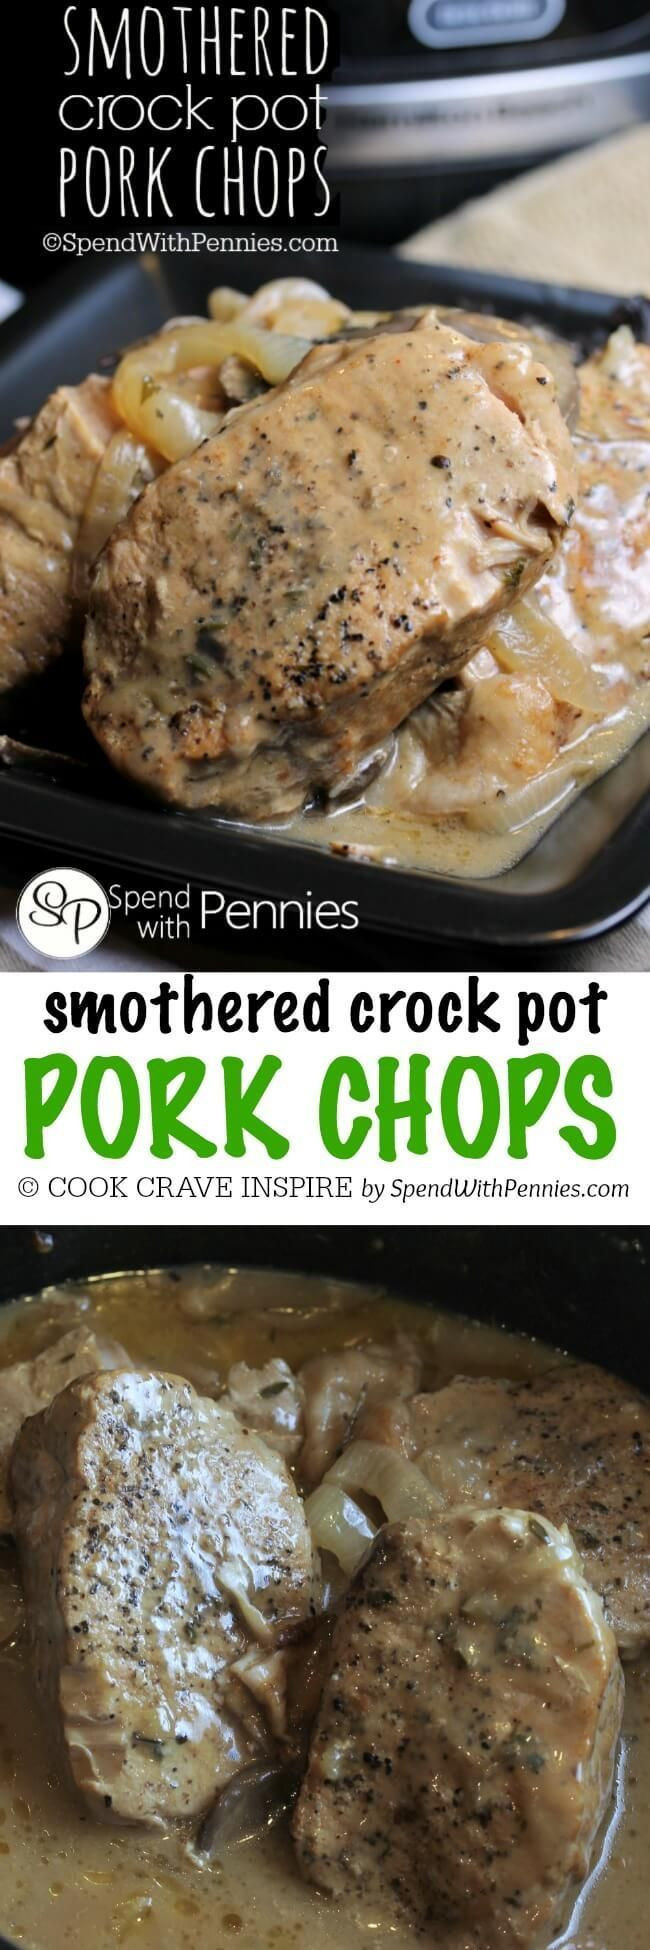 Easy Crock Pot Pork Chops
 Smothered Crock Pot Pork Chops Recipe